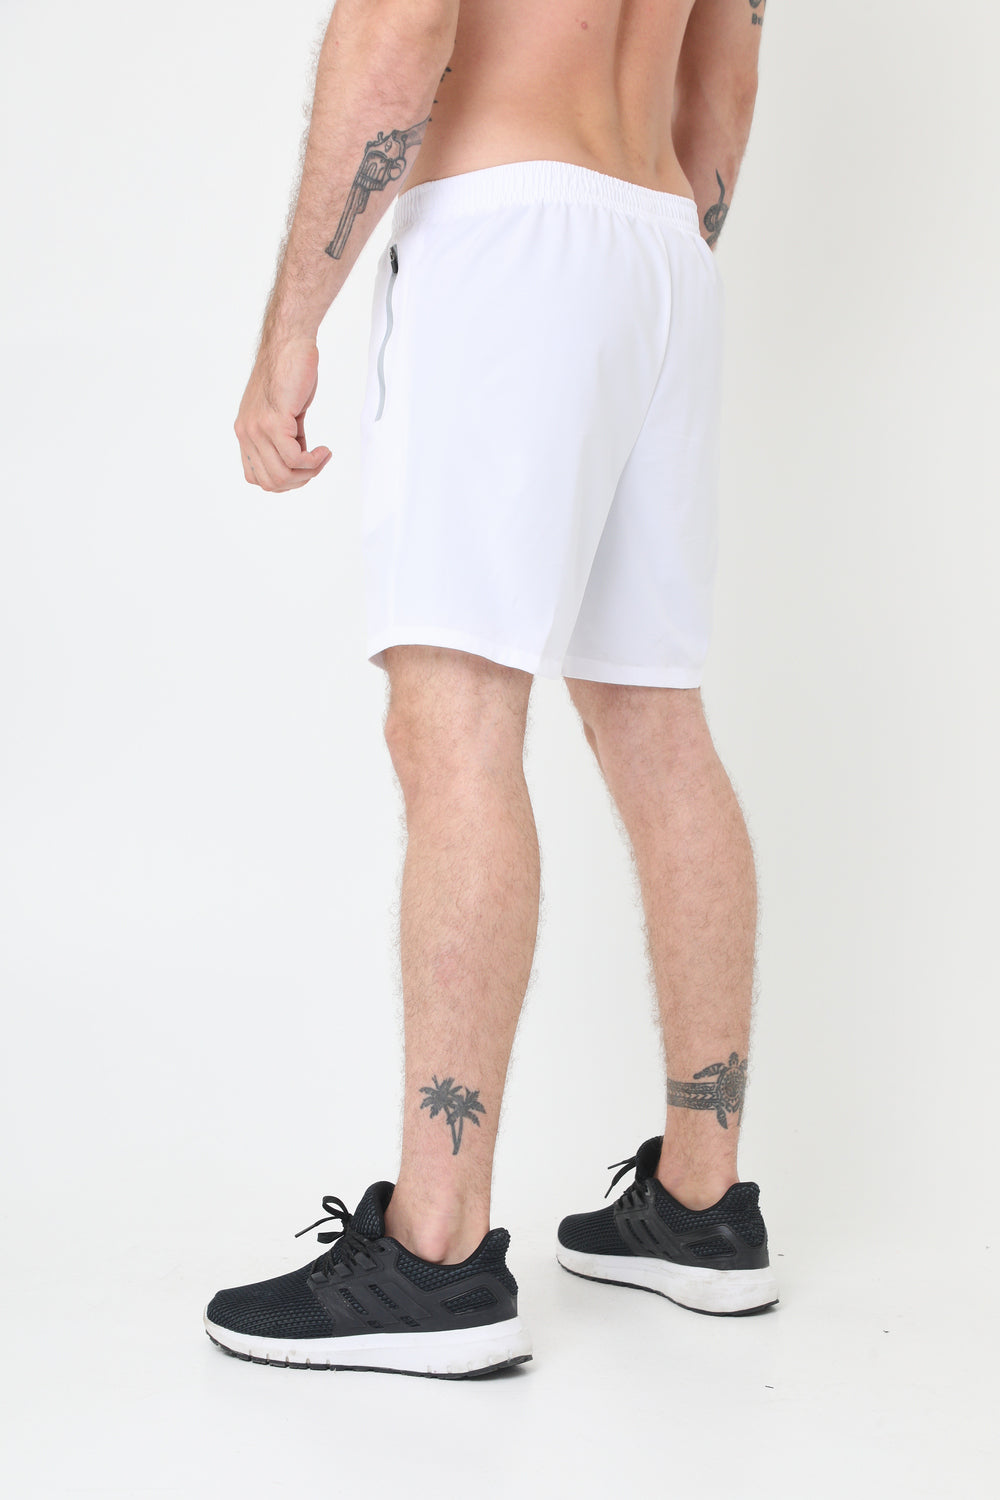 Pantaloneta deportiva blanco óptico ciclista interno y bolsillos laterales para hombre